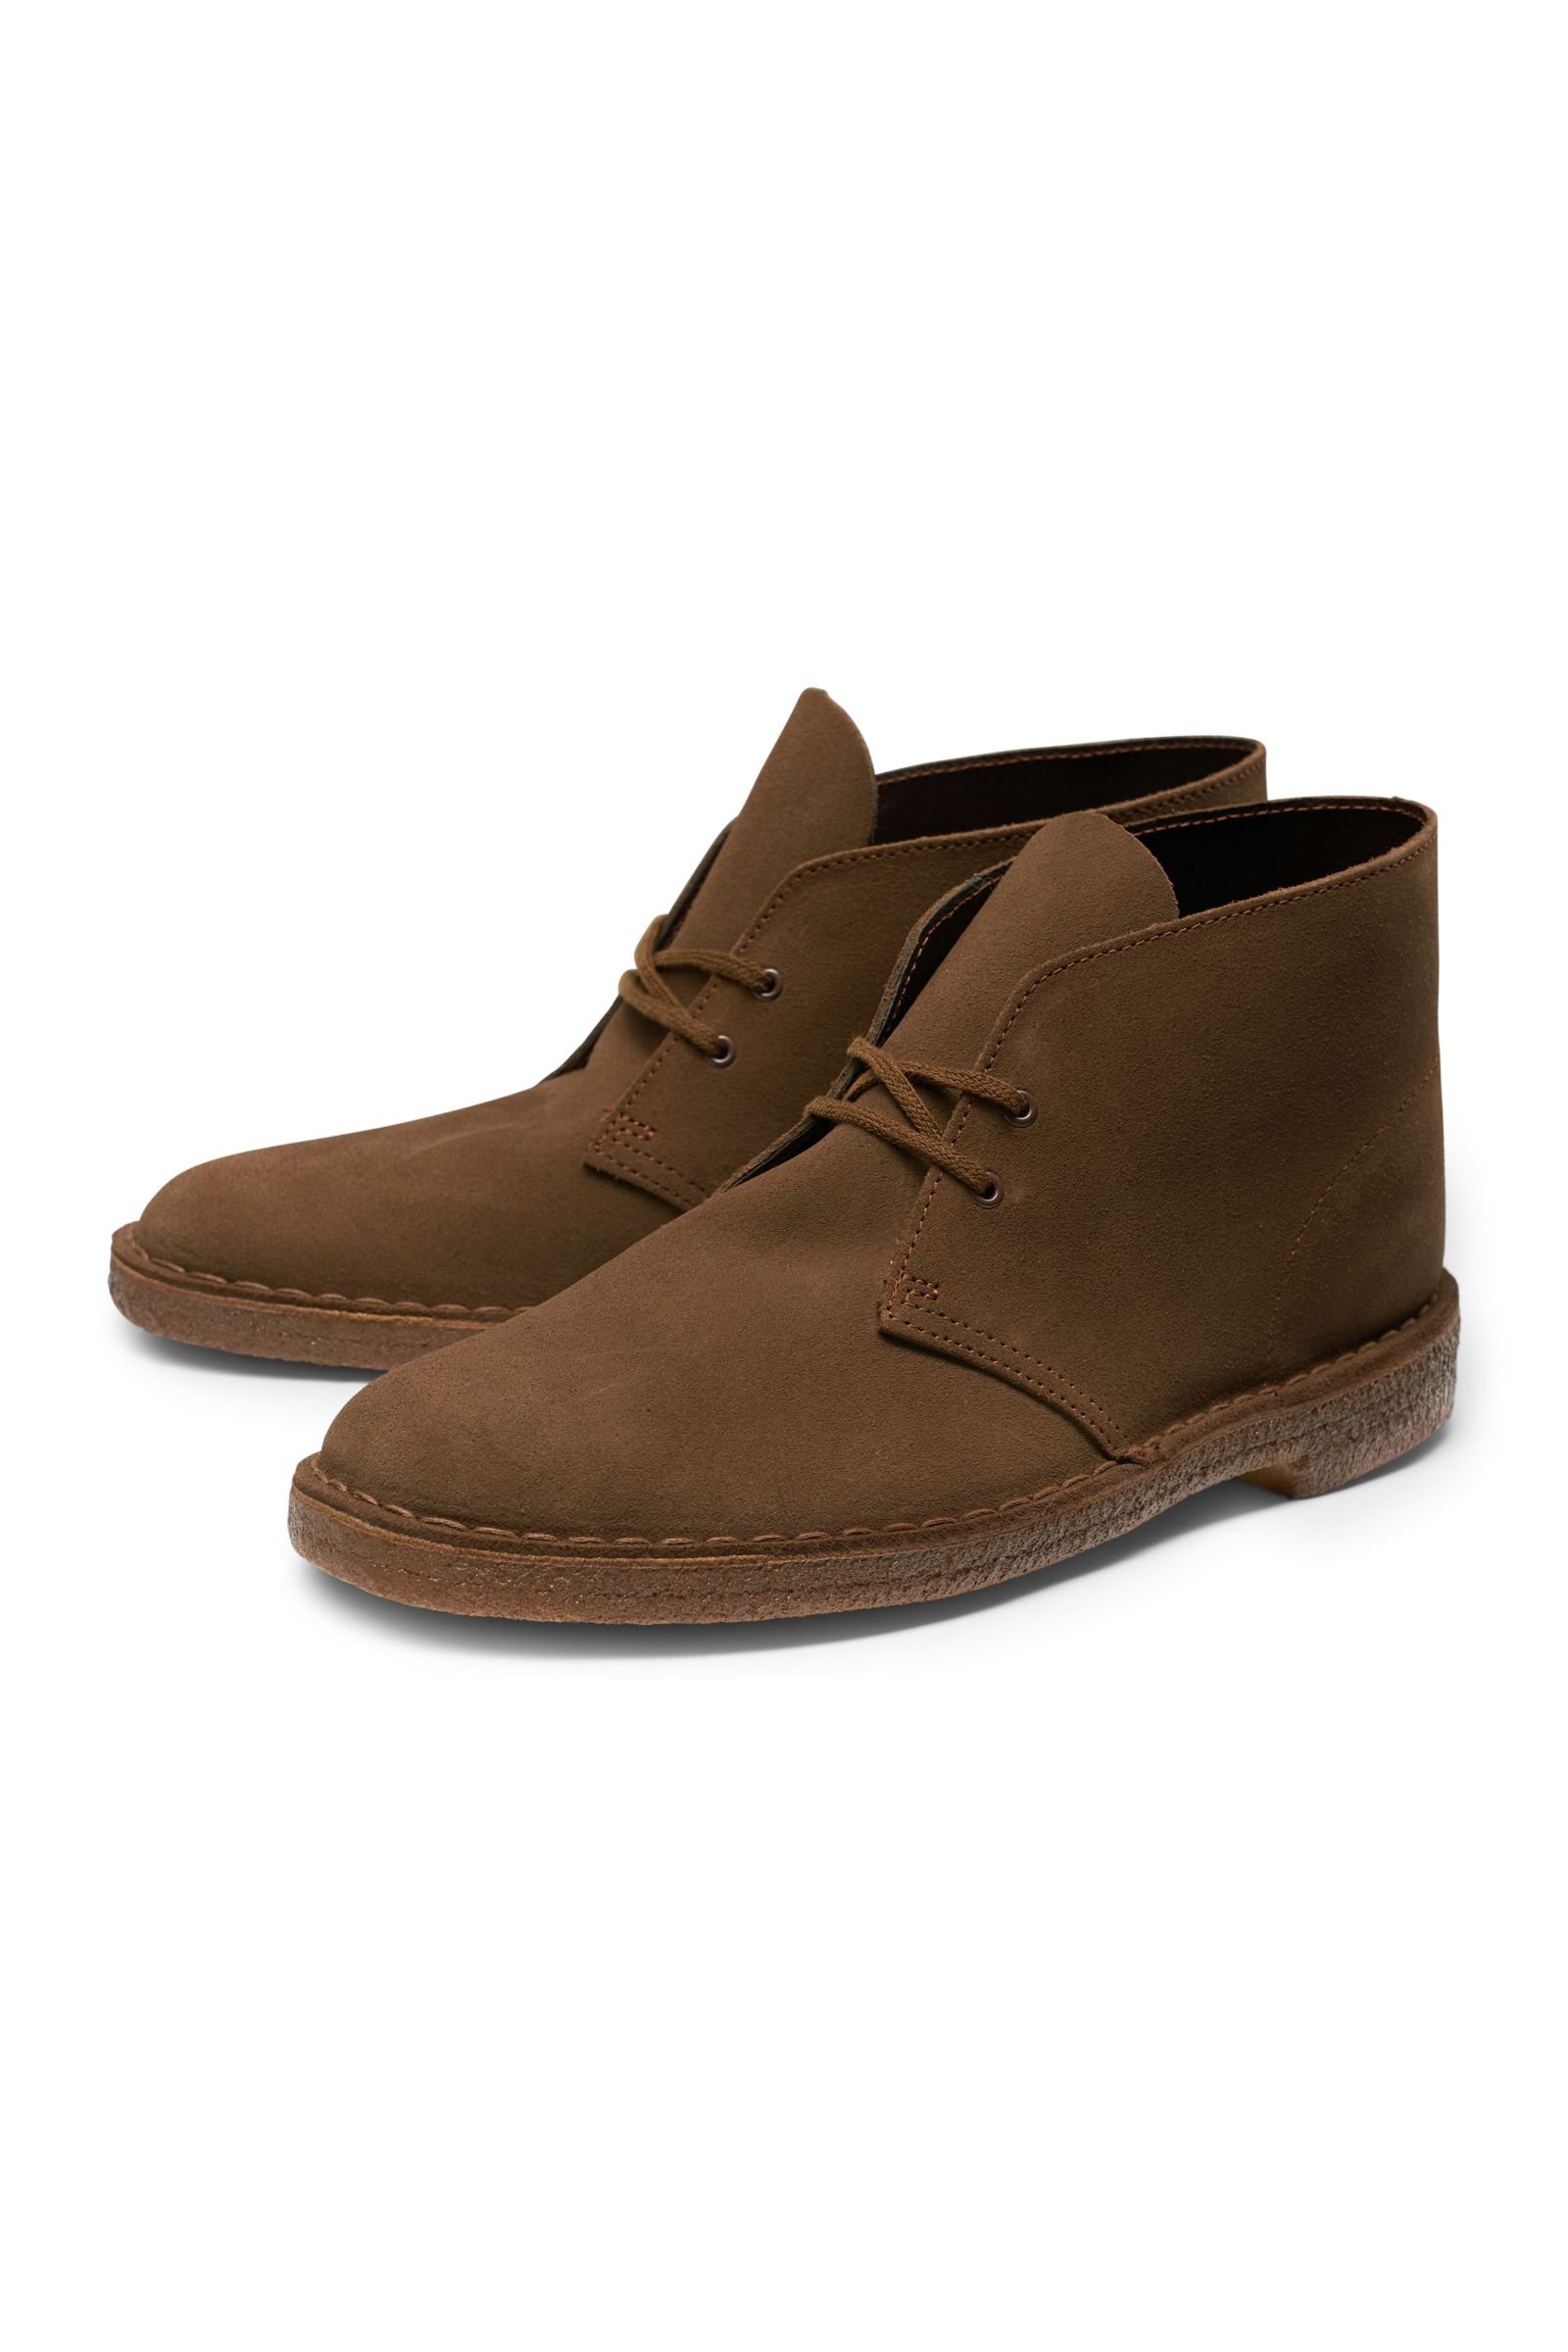 clarks originals desert boot brown